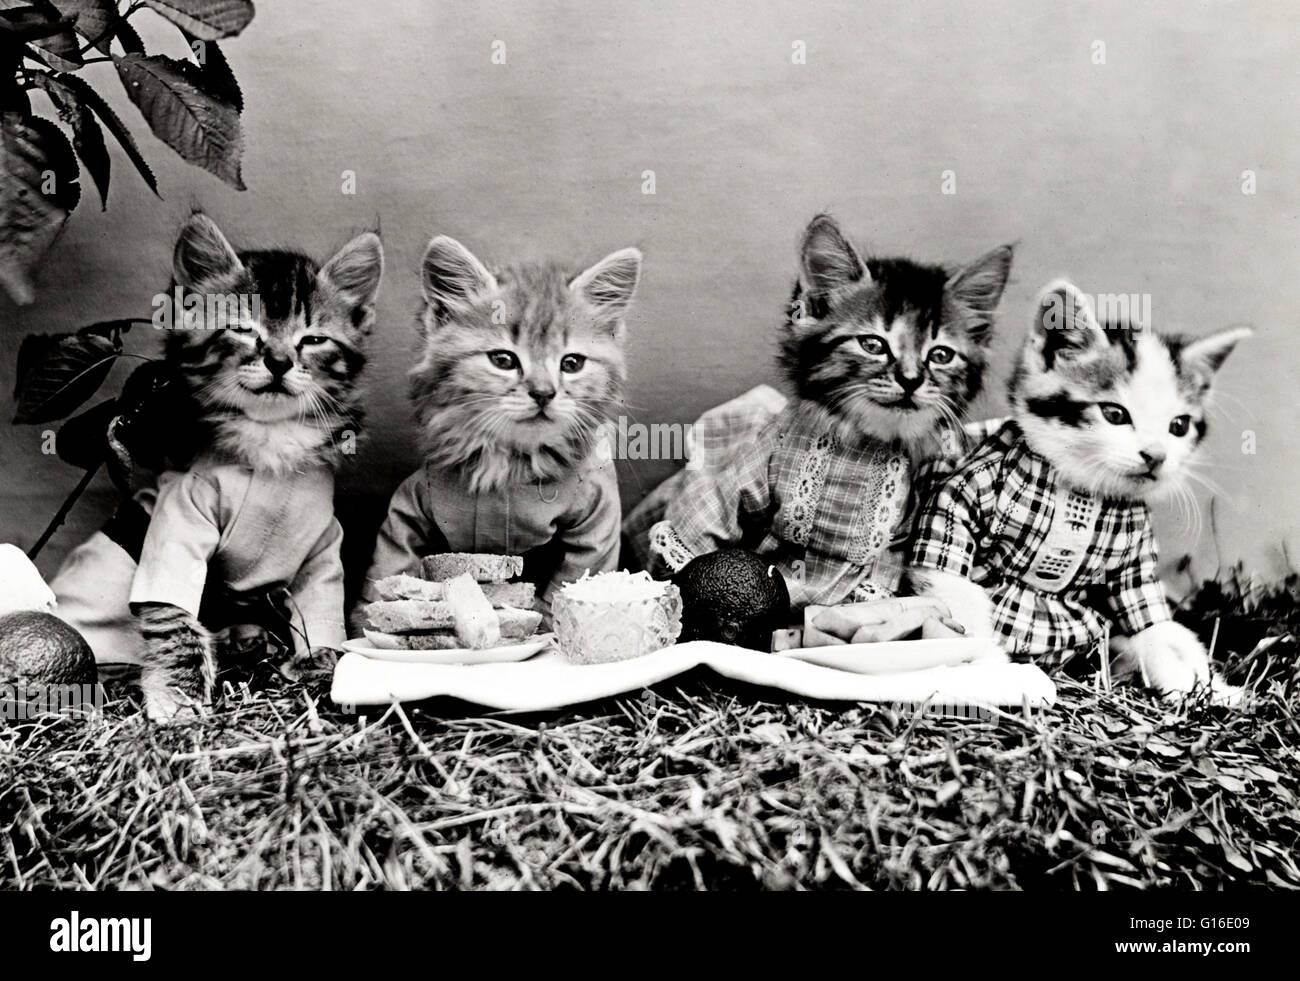 Unter dem Titel: "Das Picknick" zeigt vier Kätzchen, Kleidung und Essen im Freien. Harry Whittier befreit (1879-1953) war ein US-amerikanischer Fotograf, der lebende Tiere gekleidet und posierte in menschlichen Situationen mit Requisiten fotografiert. Seine Tierfotos wurden vorgestellt Stockfoto